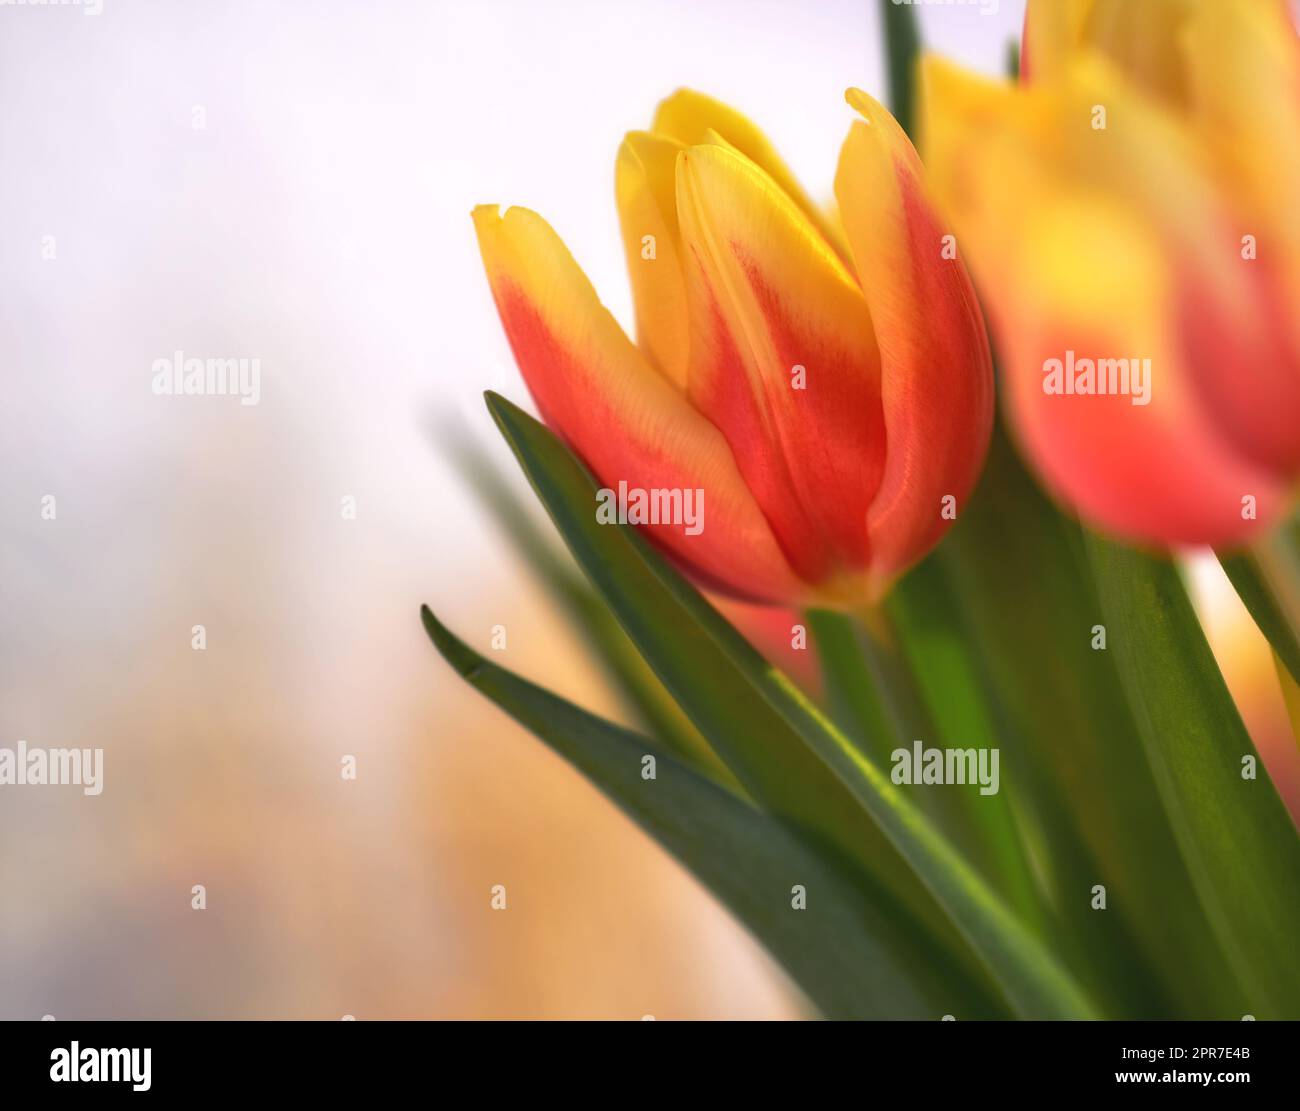 Nahaufnahme orangefarbener Tulpen auf isoliertem Hintergrund mit Kopierraum. Ein Blumenstrauß oder ein Haufen wunderschöner Tulpenblumen mit grünen Stielen, die als Schmuck für ihre Schönheit und den Duft von Blumen gezüchtet werden Stockfoto